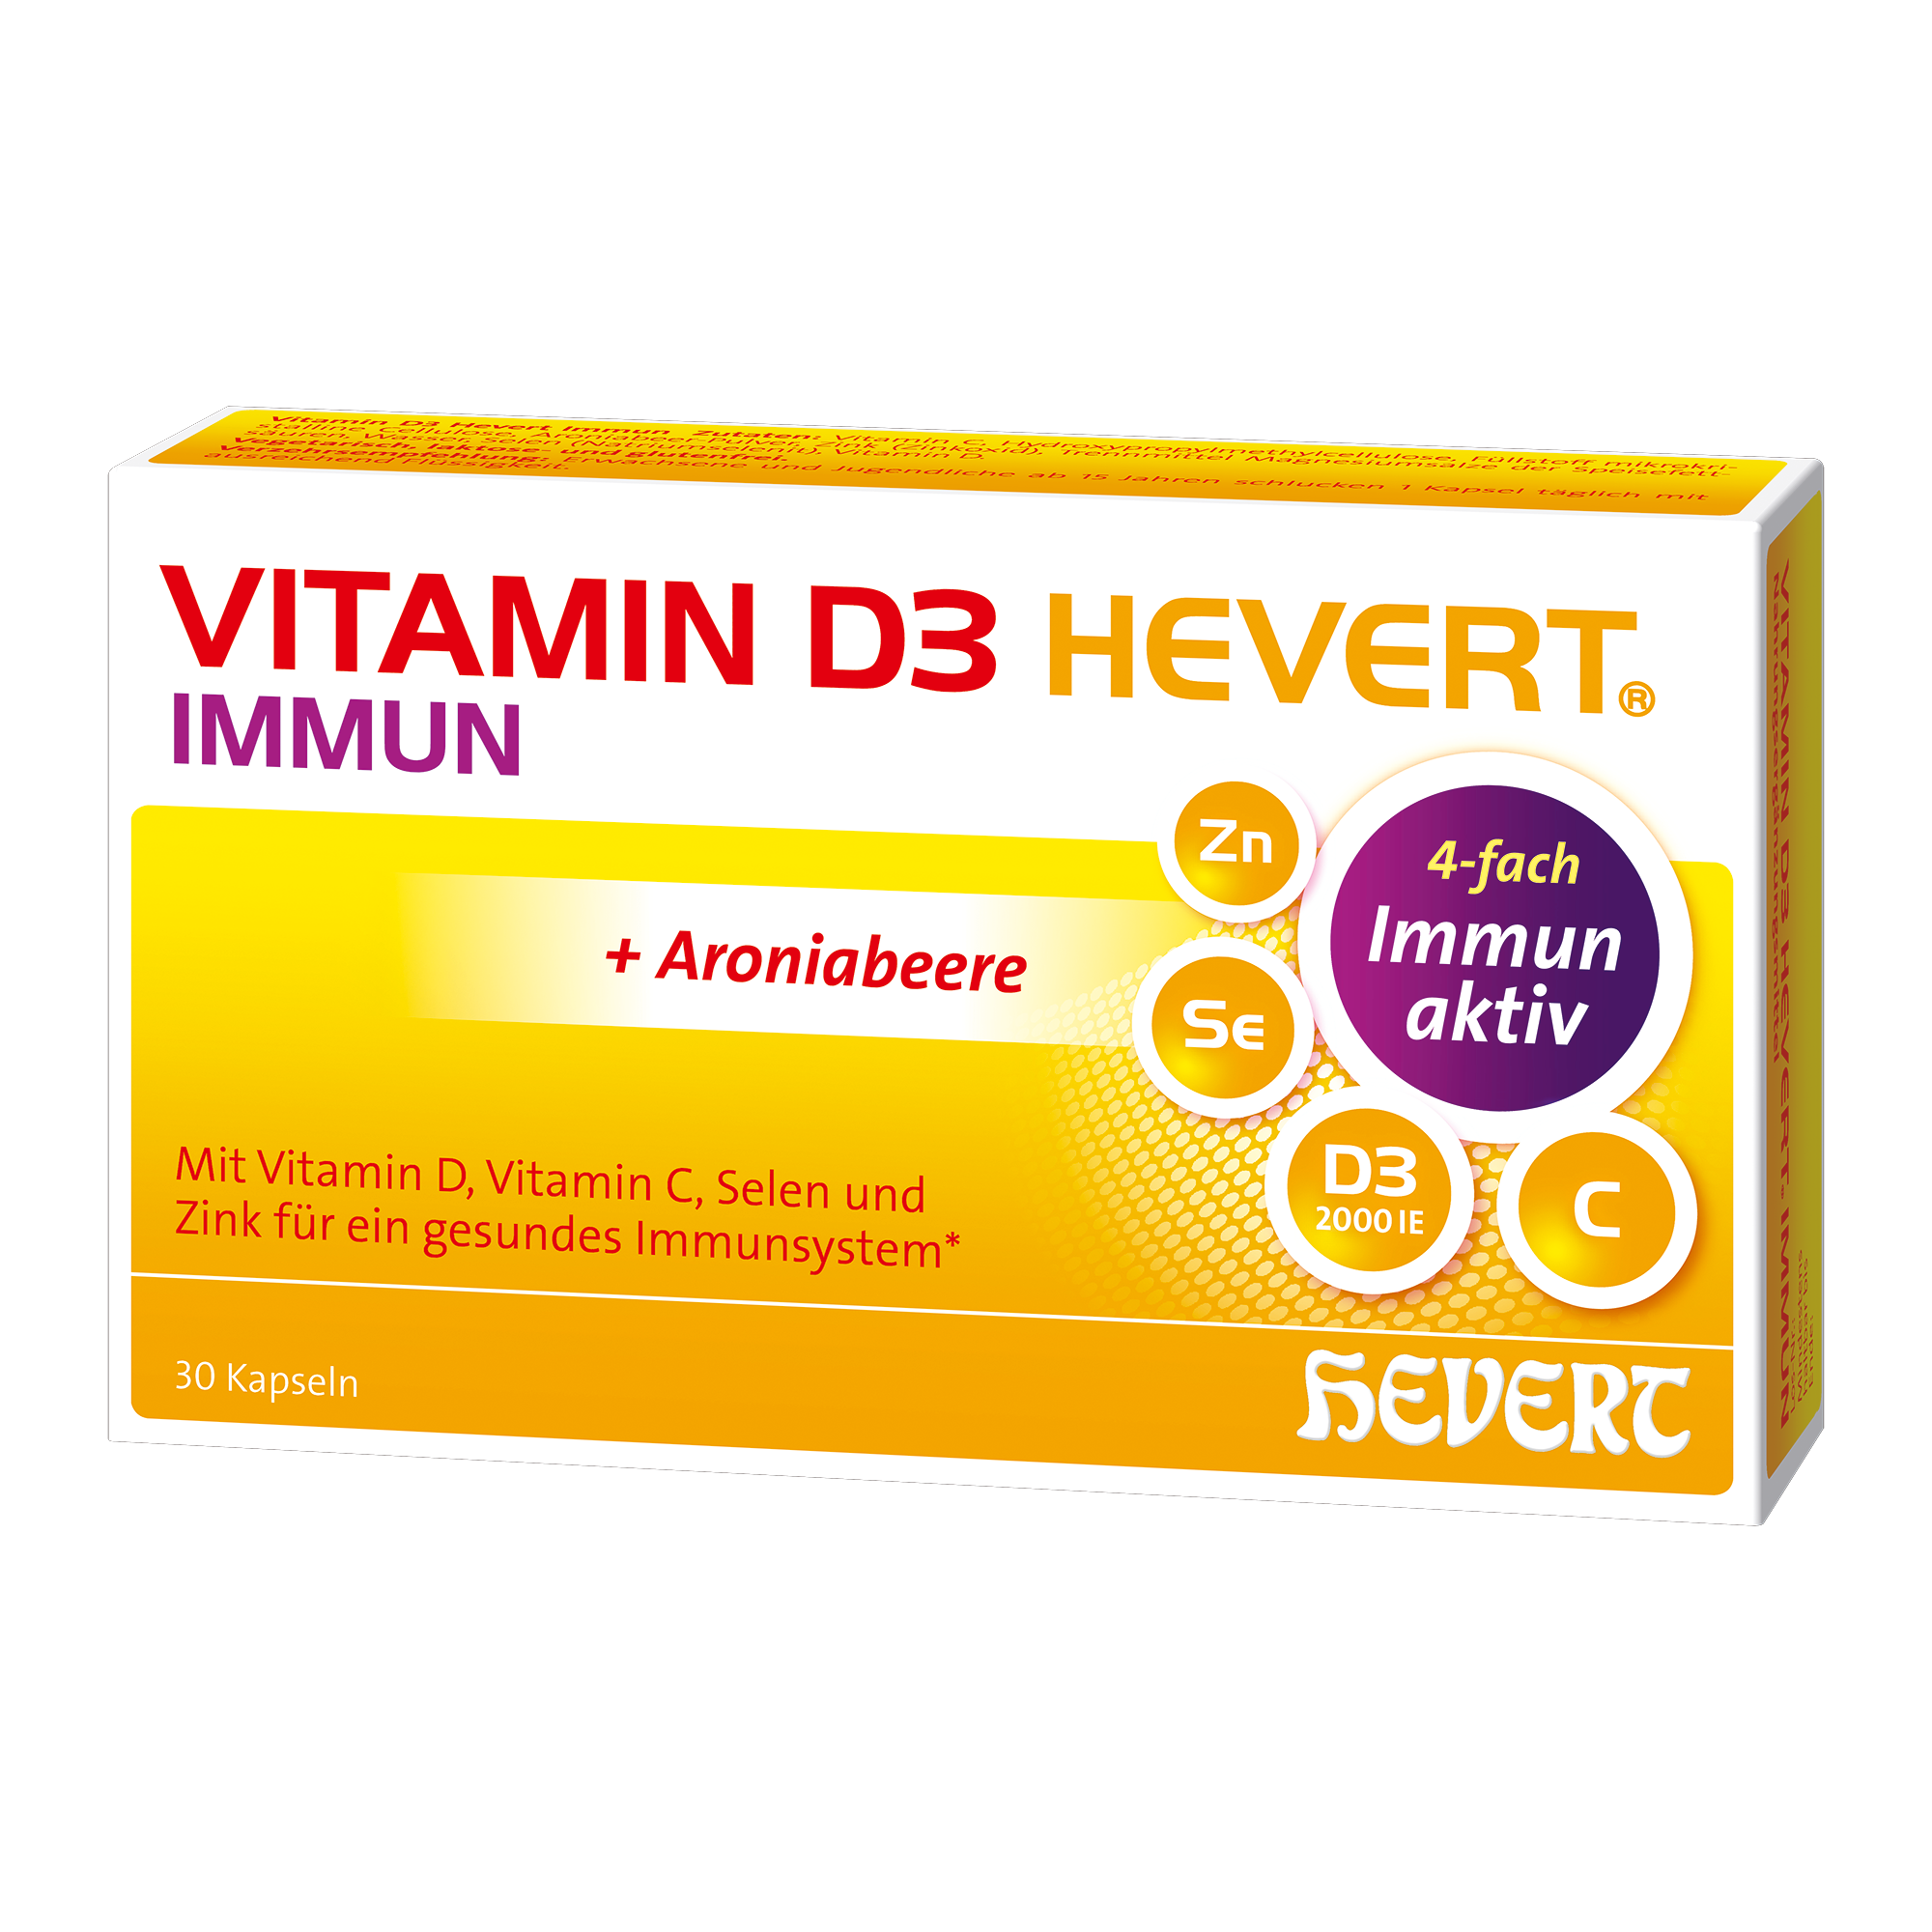 VITAMIN D3 HEVERT Immun Kapseln